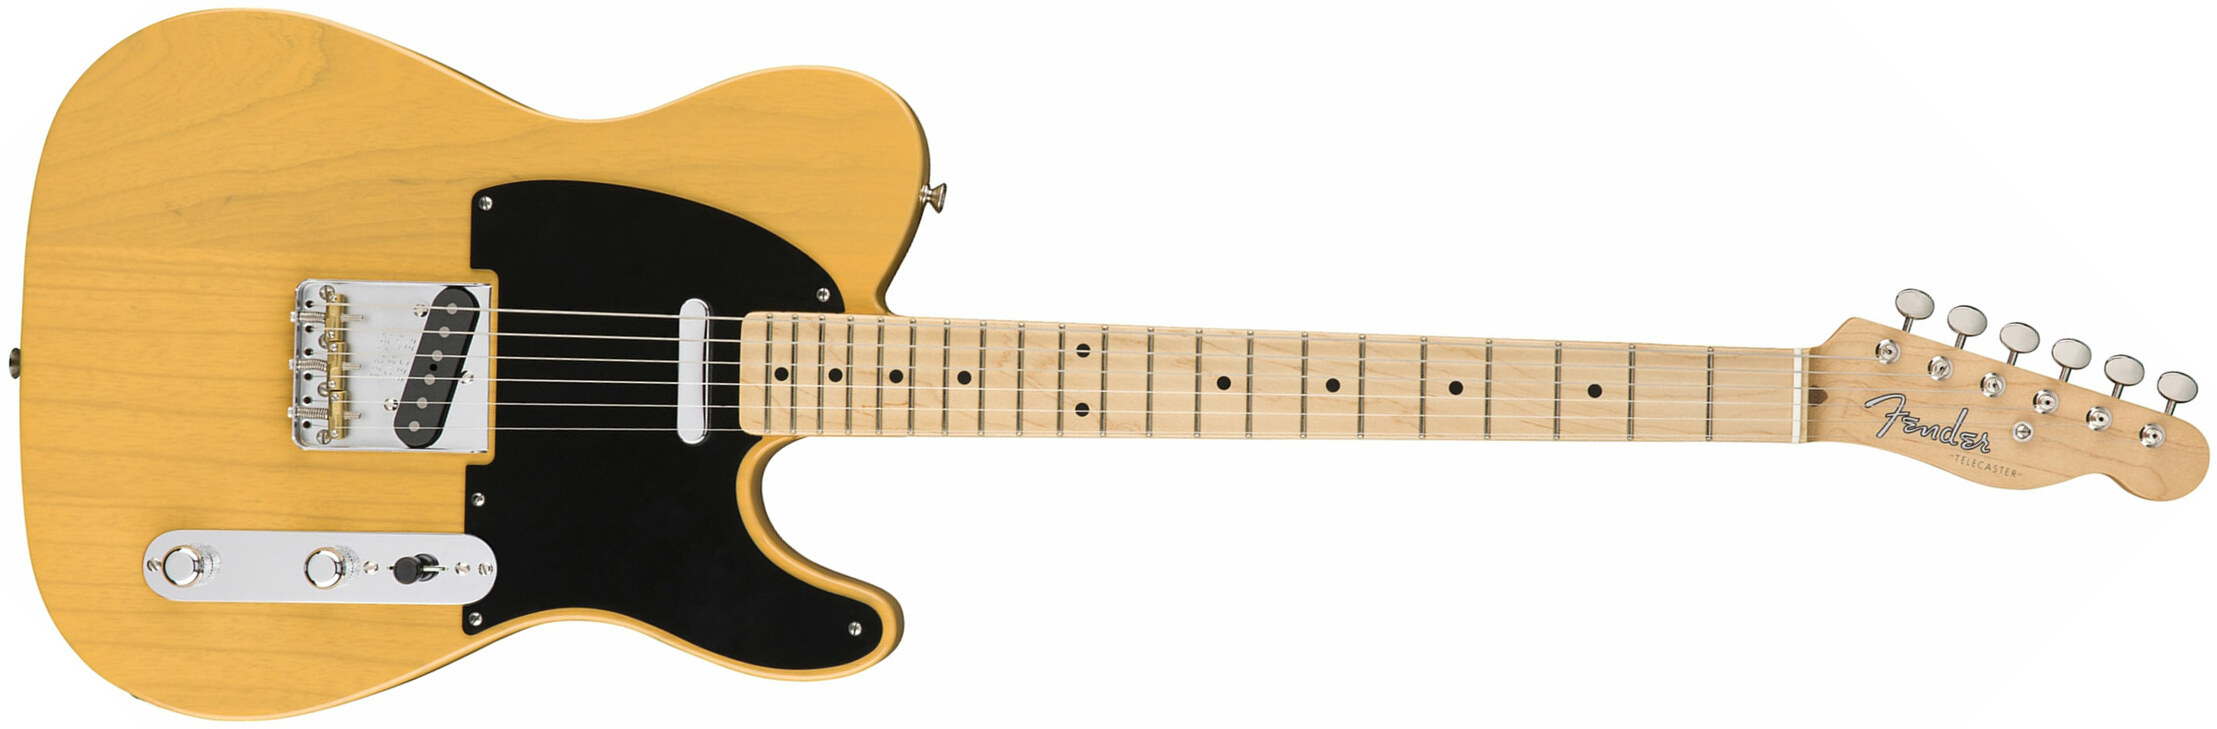 Fender Tele '50s American Original Usa Mn - Butterscotch Blonde - Tel shape electric guitar - Main picture